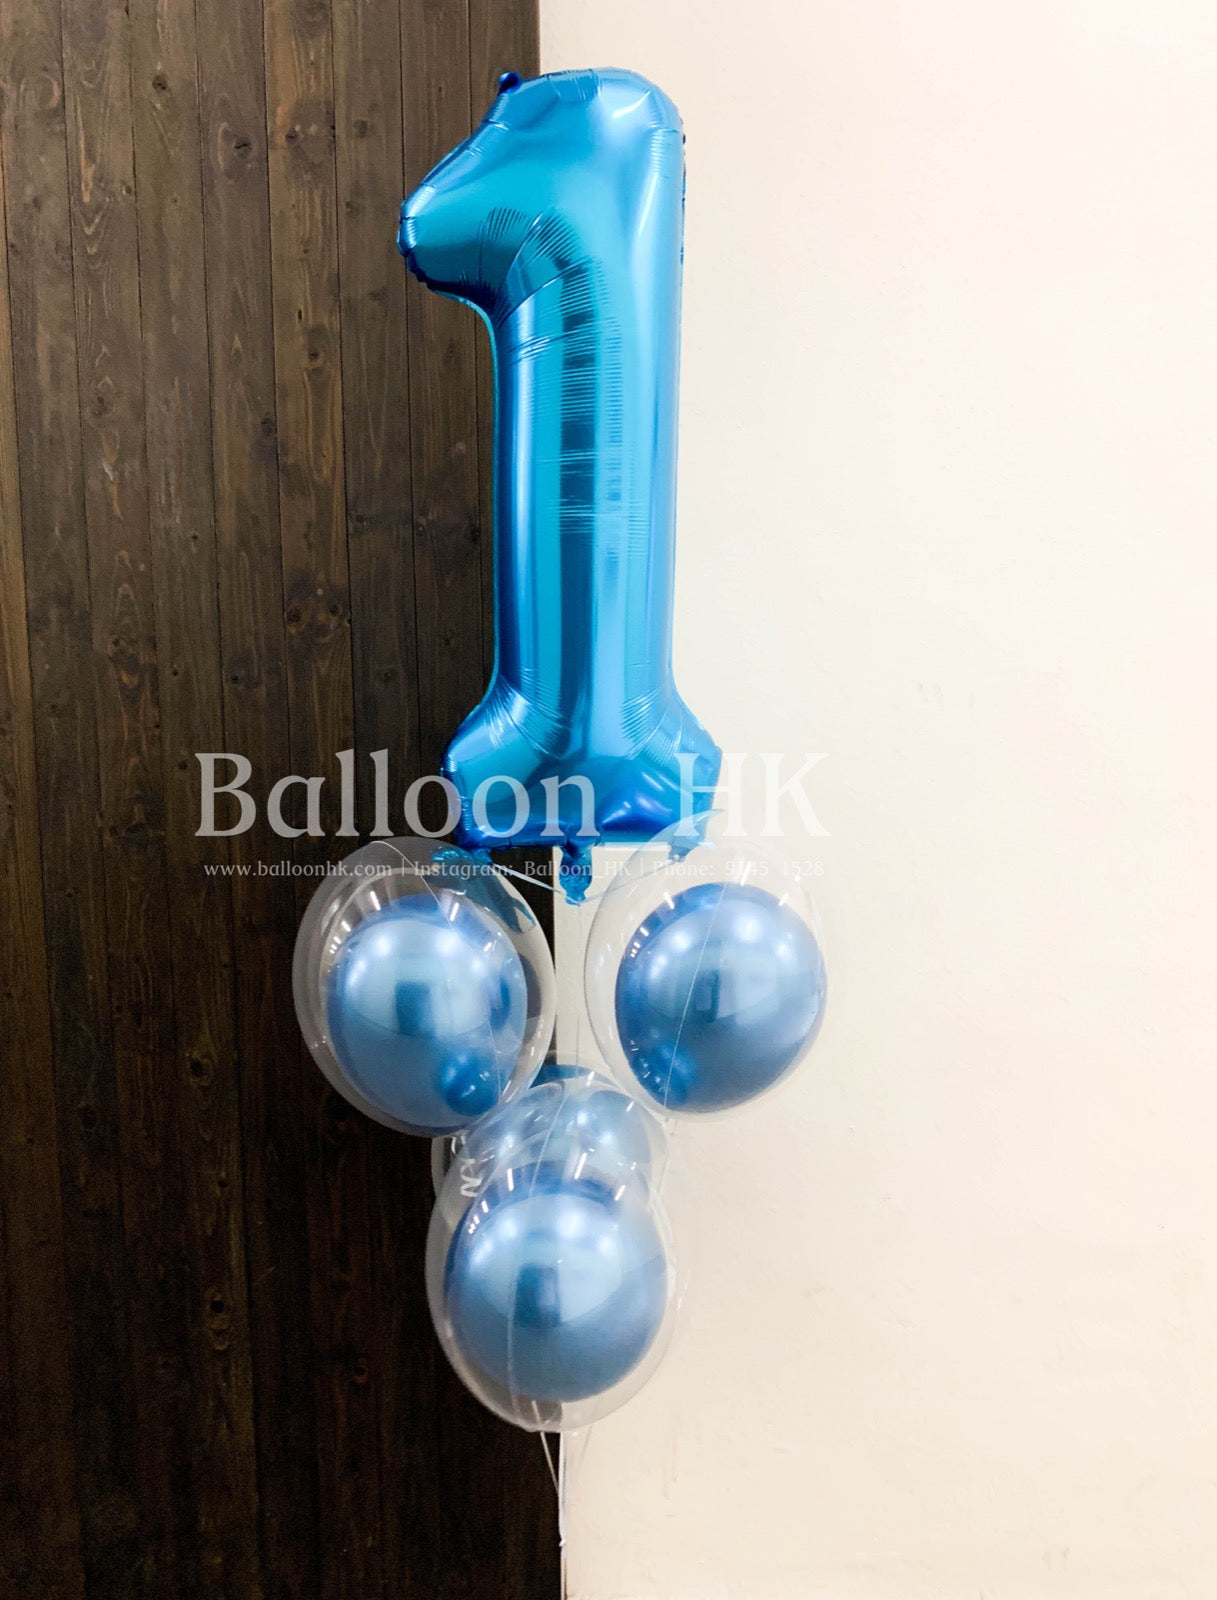 Baby氣球束 12